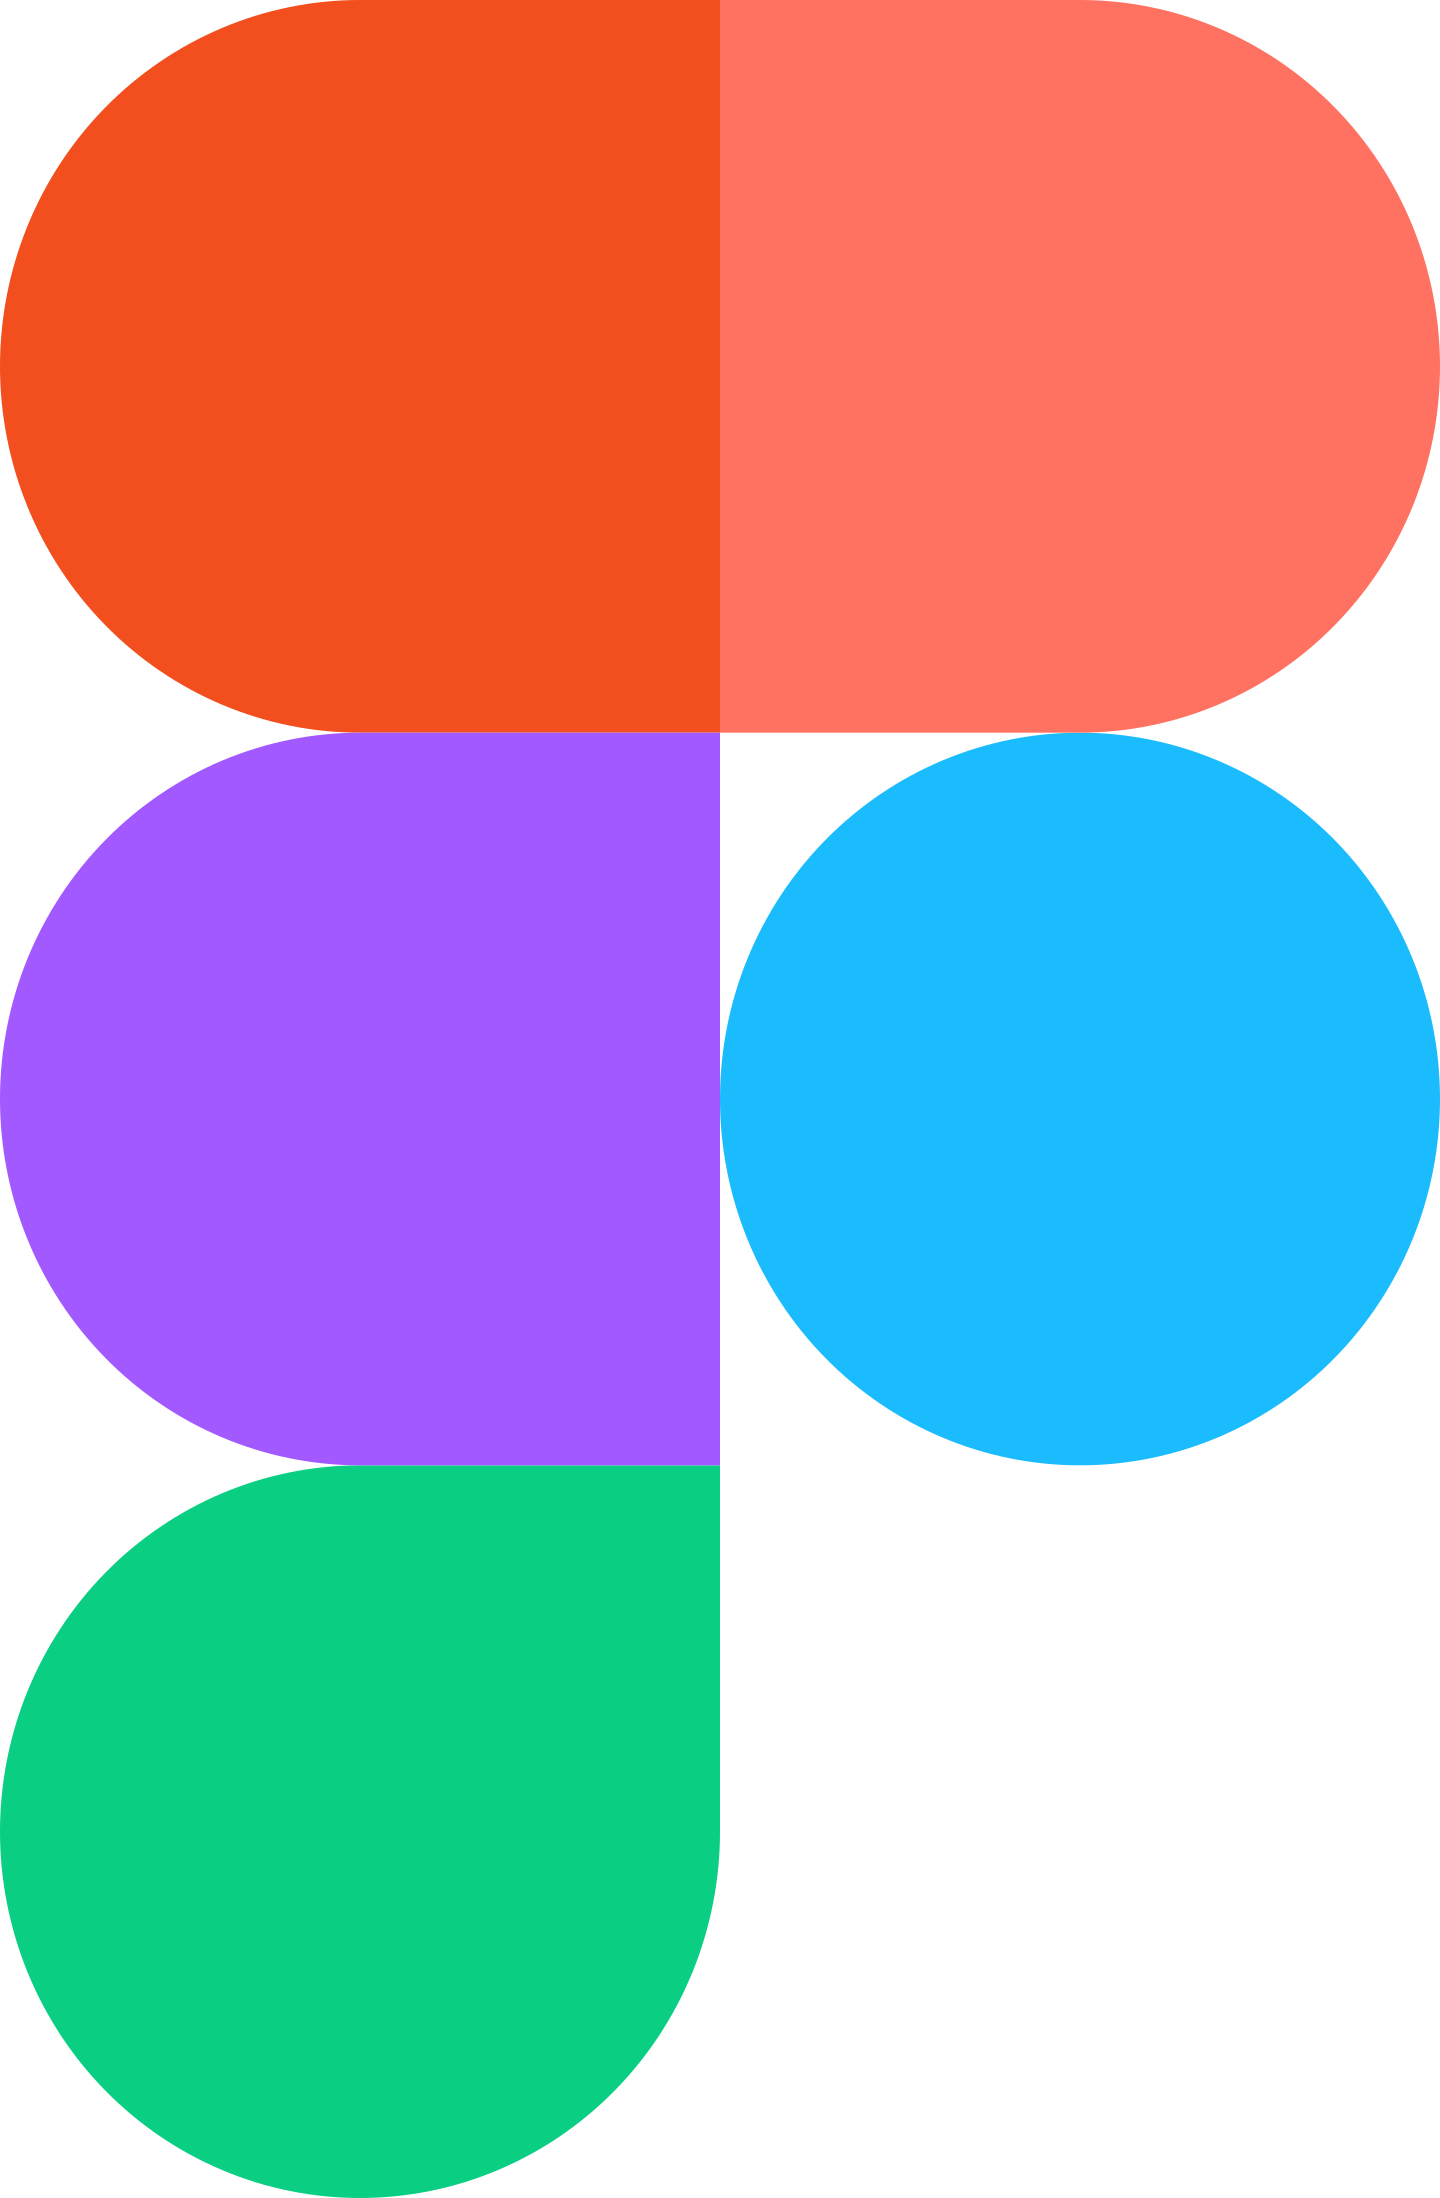 figma logo 2 - Figma Logo